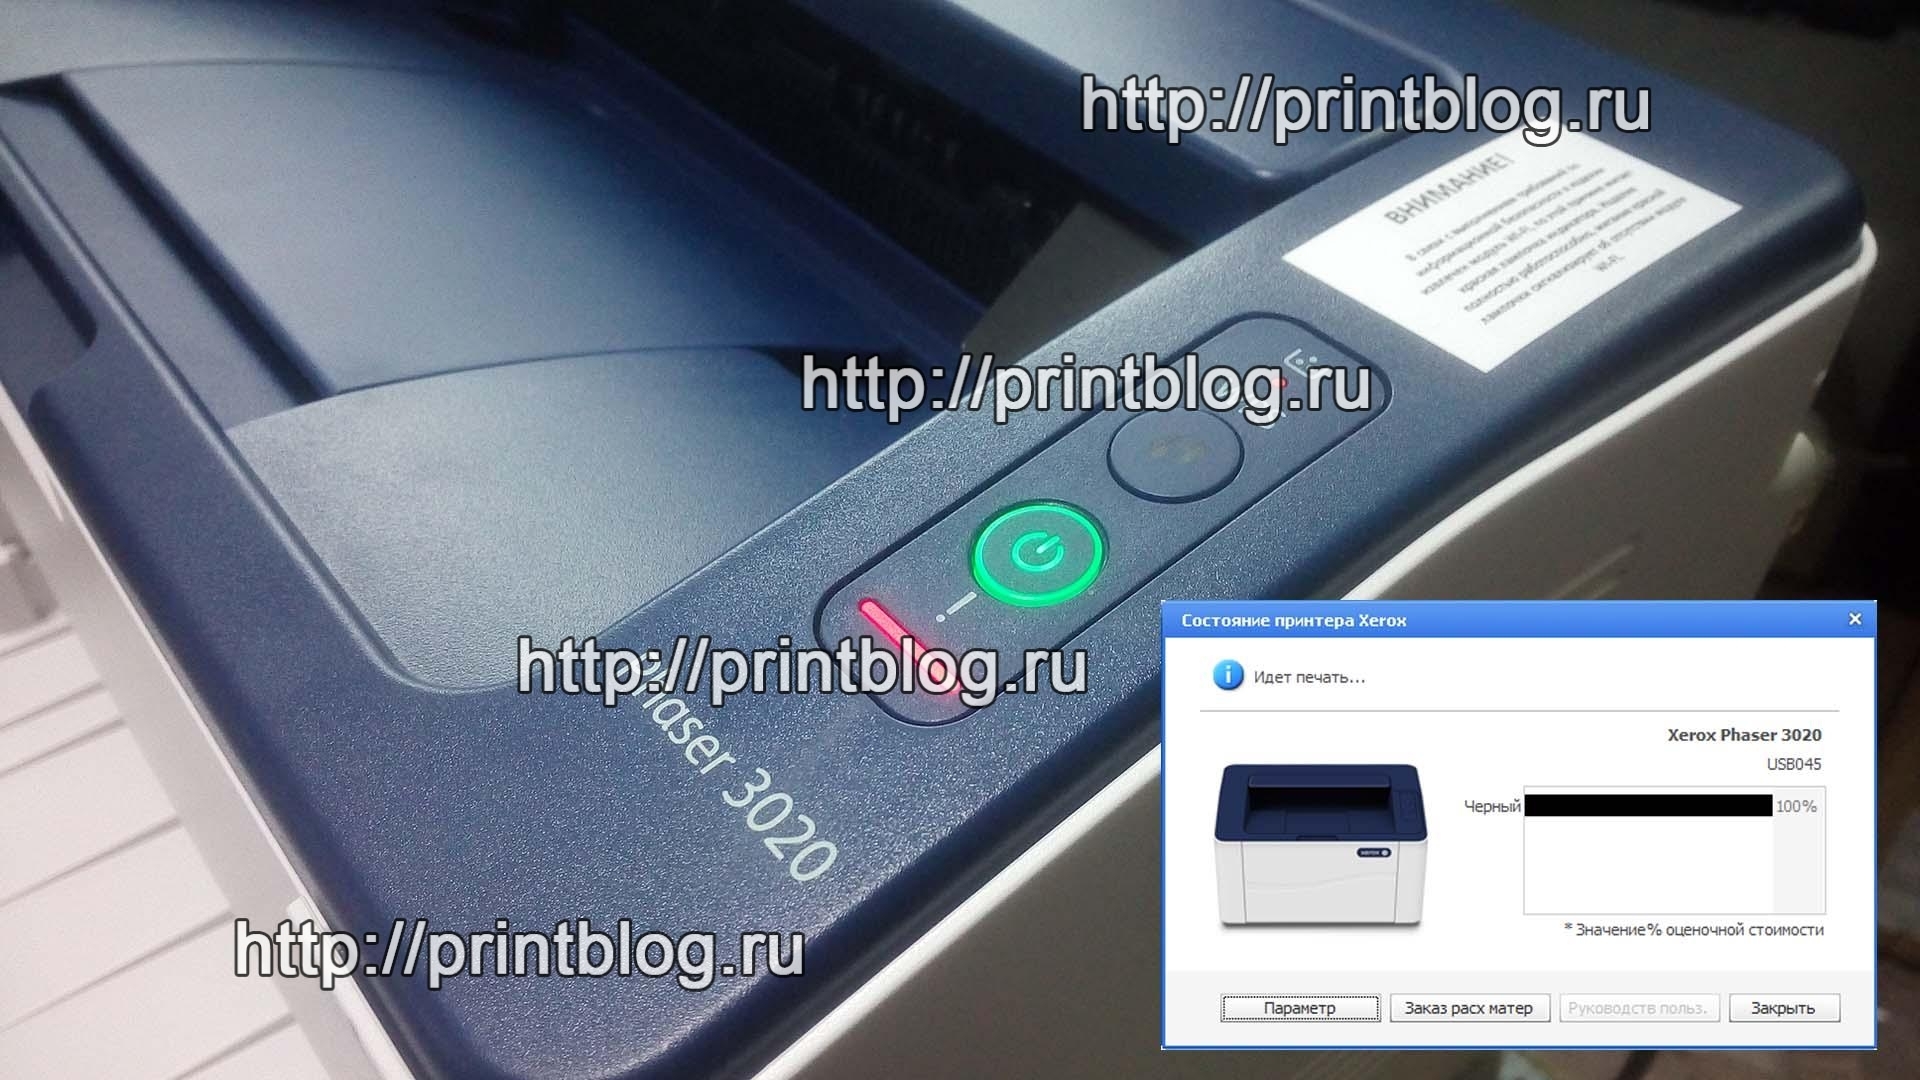 Почему xerox принтера